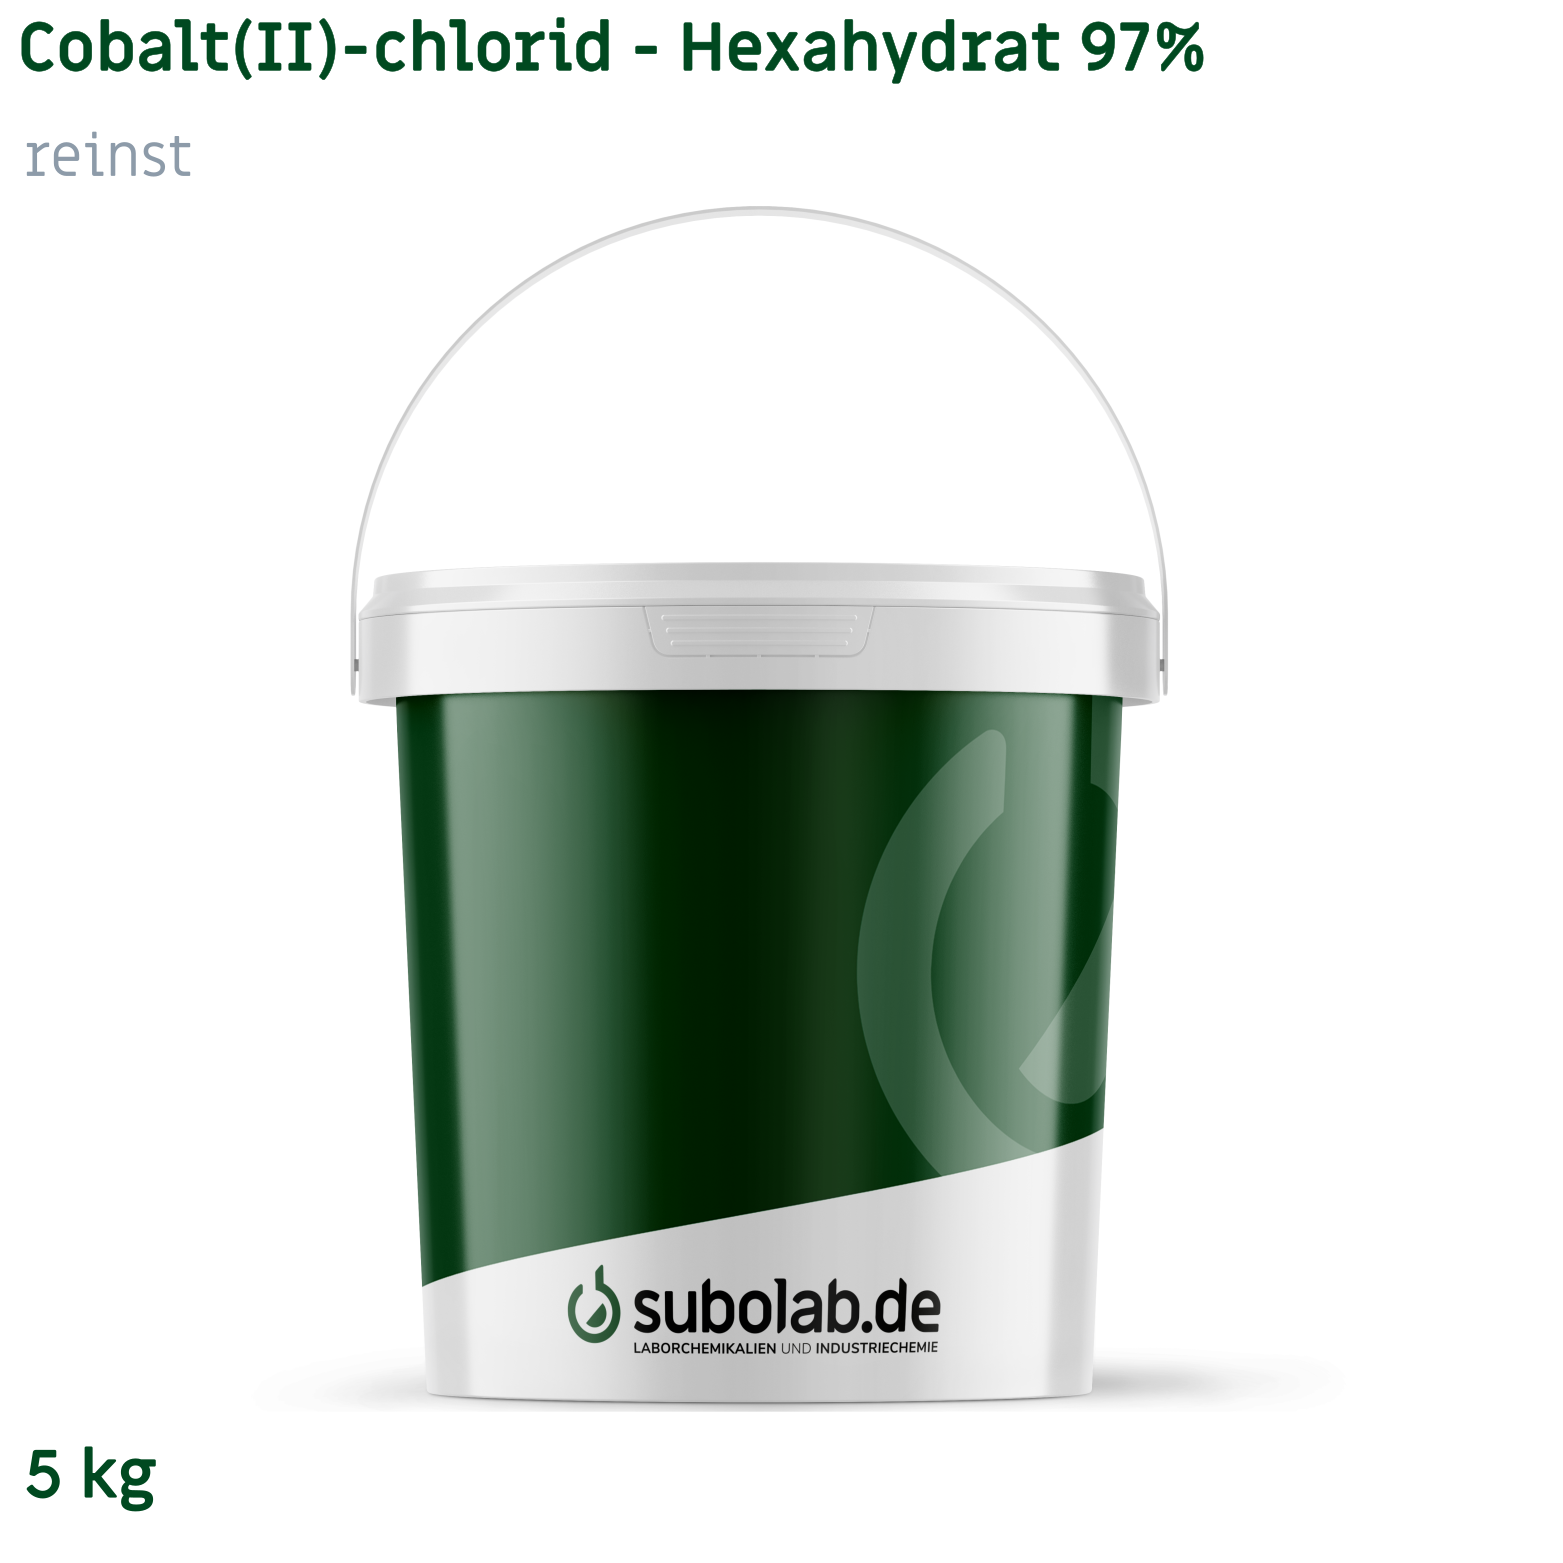 Bild von Cobalt(II)-chlorid - Hexahydrat 97% reinst (5 kg)